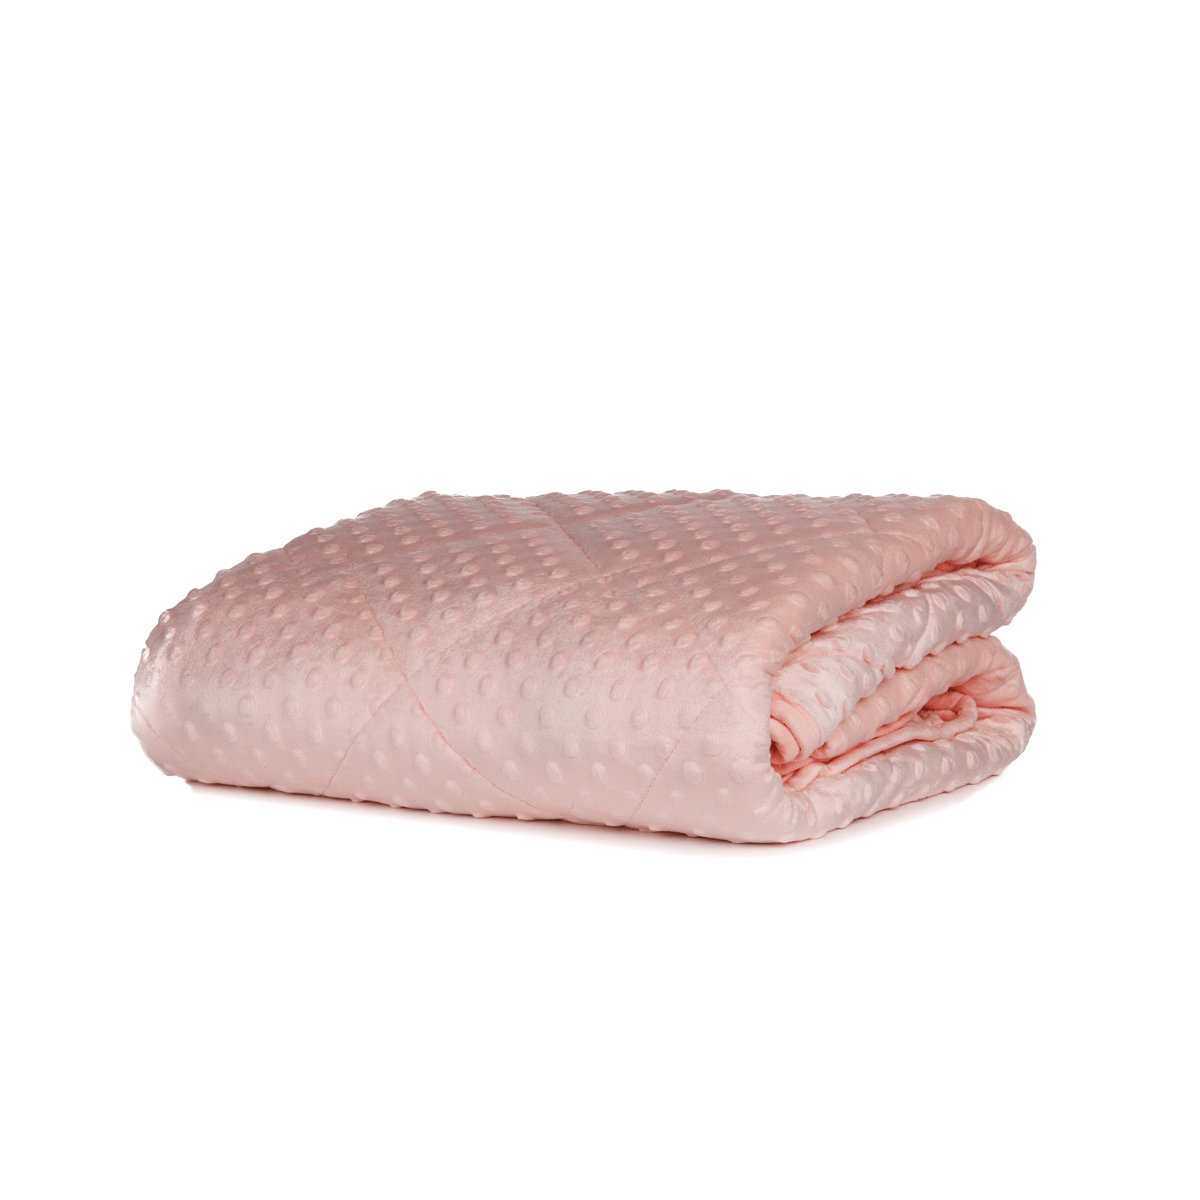     Zelesta Weighted Blanket Pink Roze Verzwaringsdeken Voor Betere Nachtrust